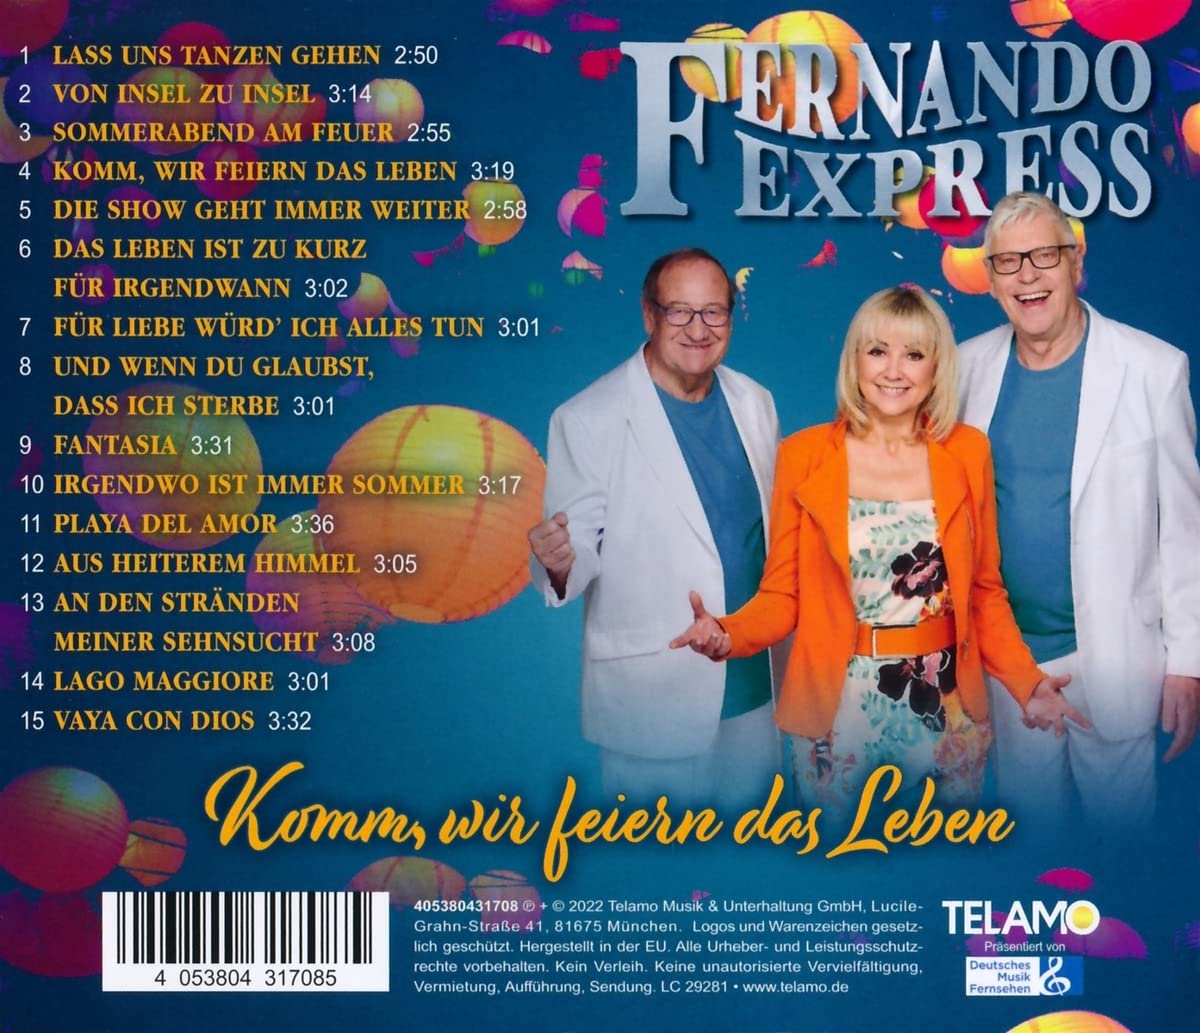 Fernando Express - Komm, wir feiern das Leben (2022)